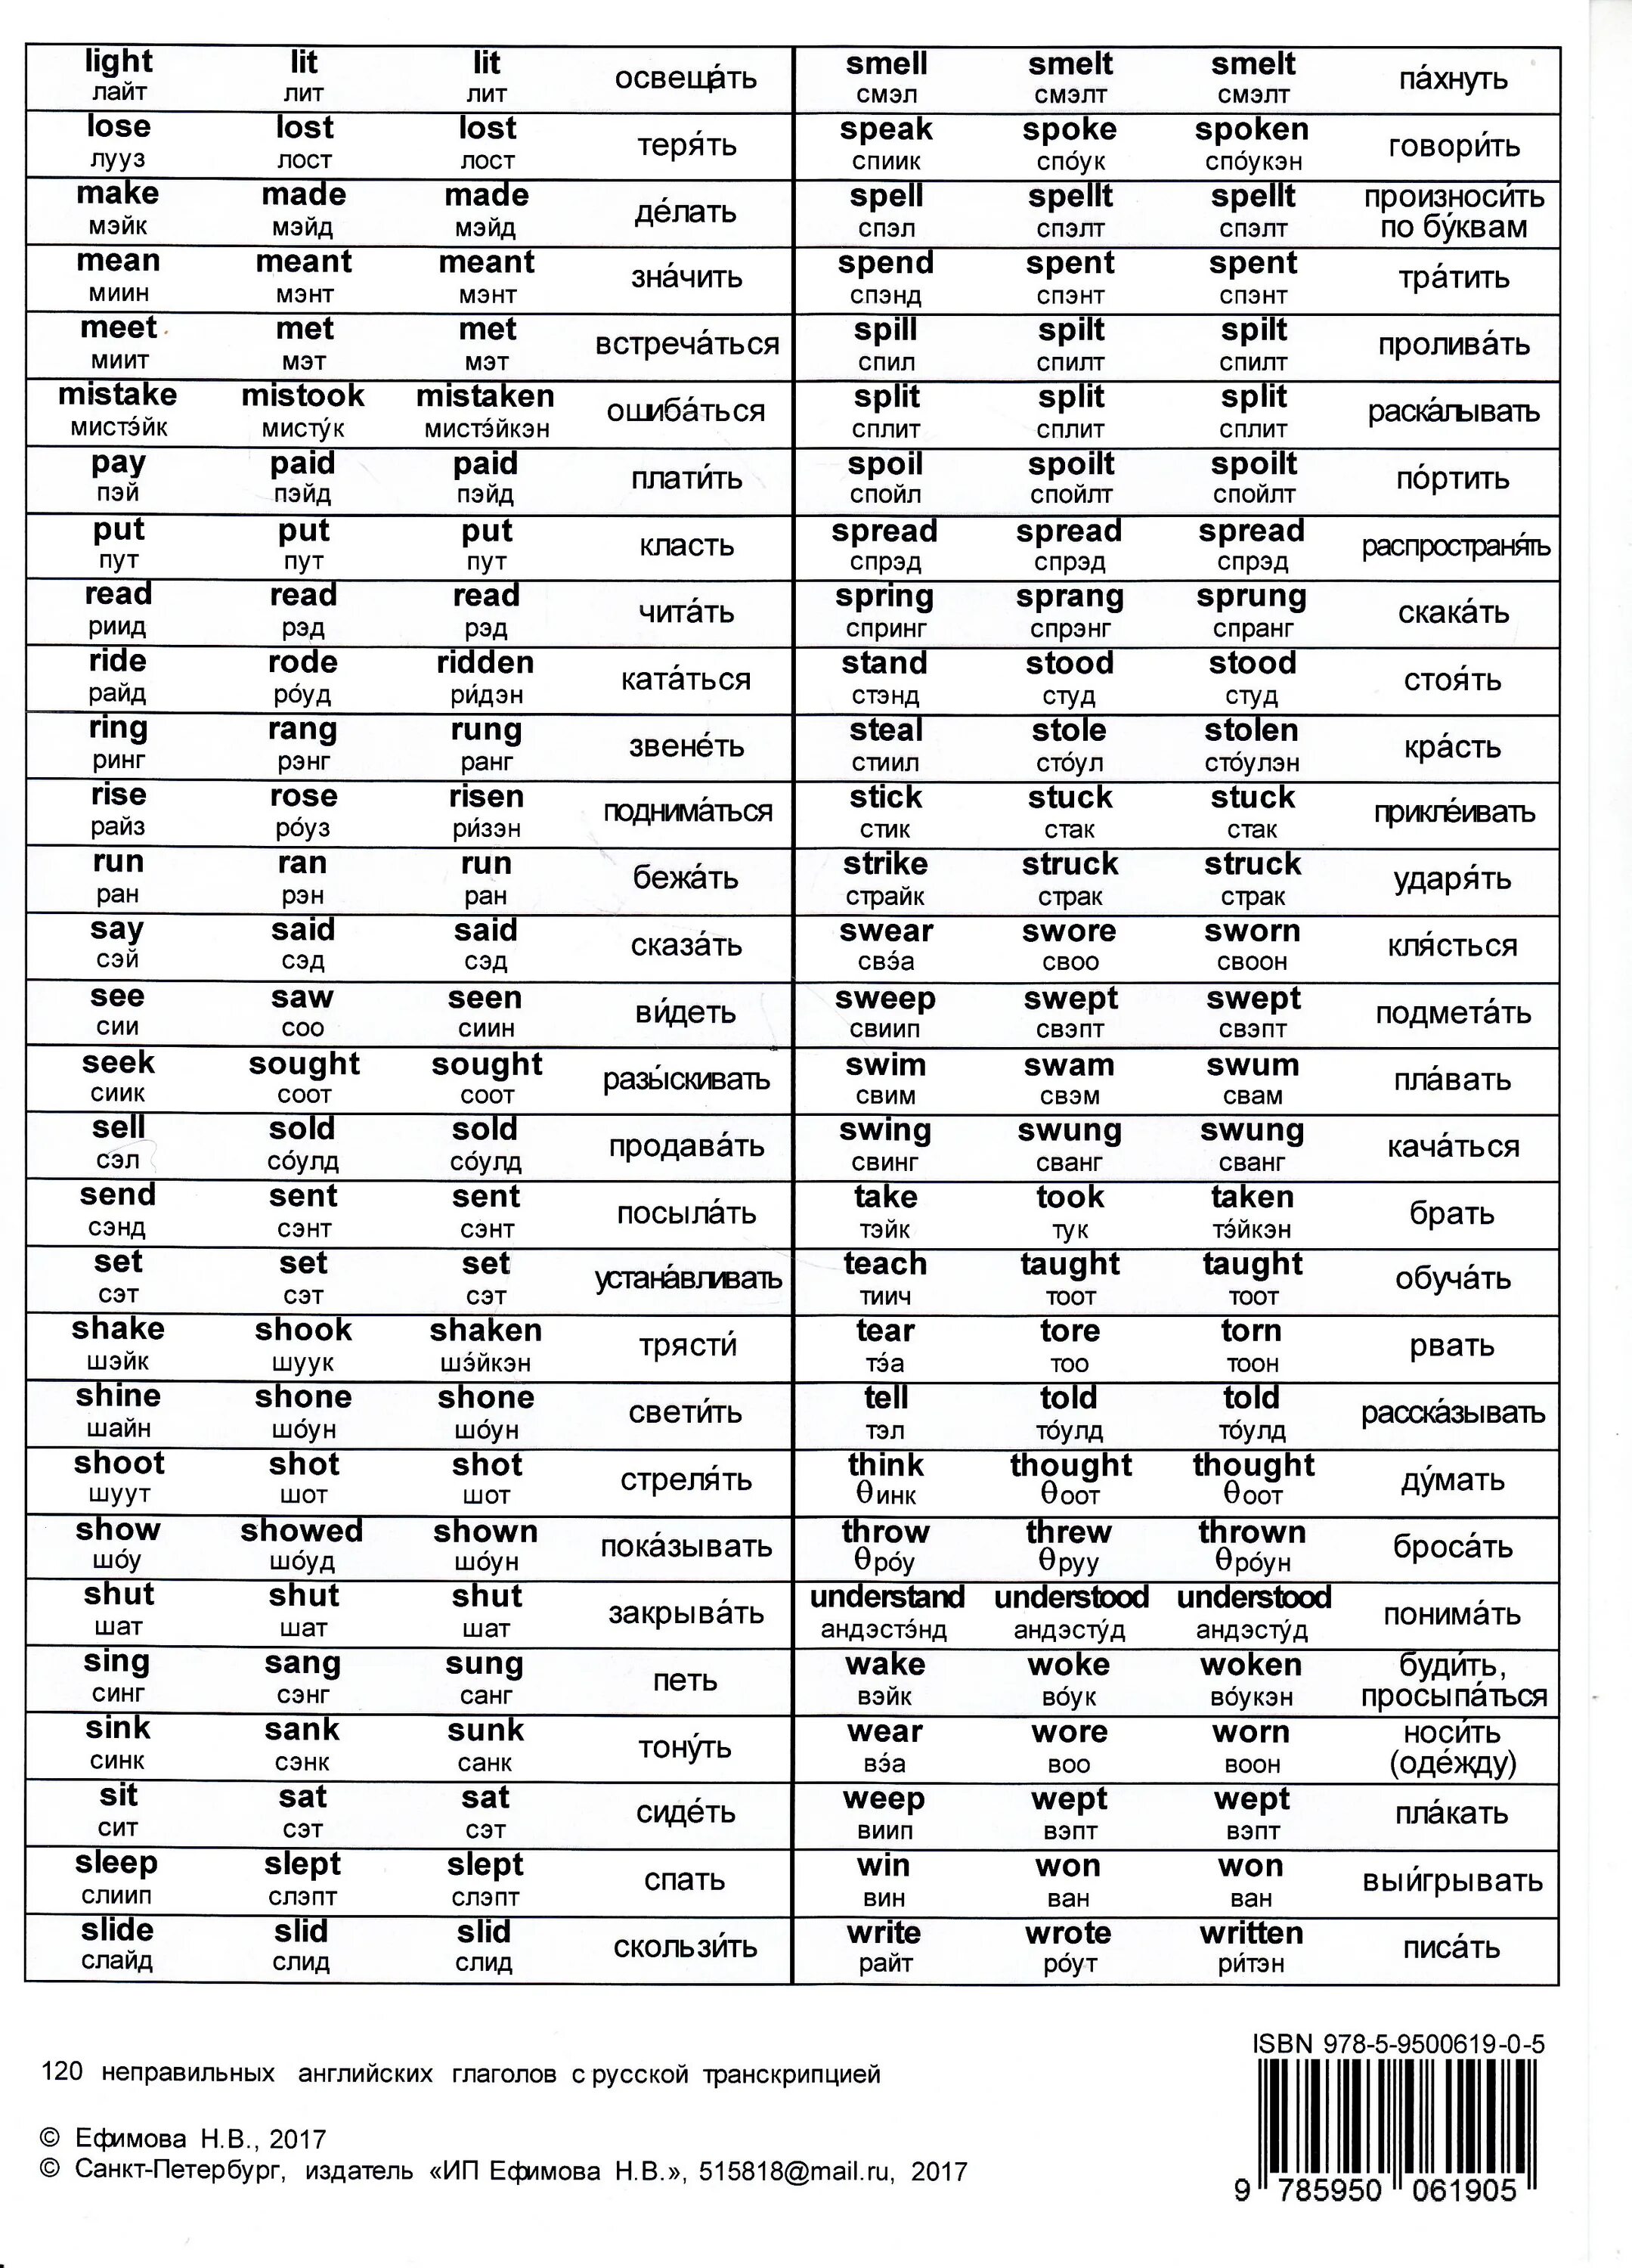 Таблица неправильных глаголов англ. Таблица неправильных глаголов в англ языке. Таблица неправильных глаголов англ с переводом. Таблица неправильных глаголов с транскрипцией и переводом.